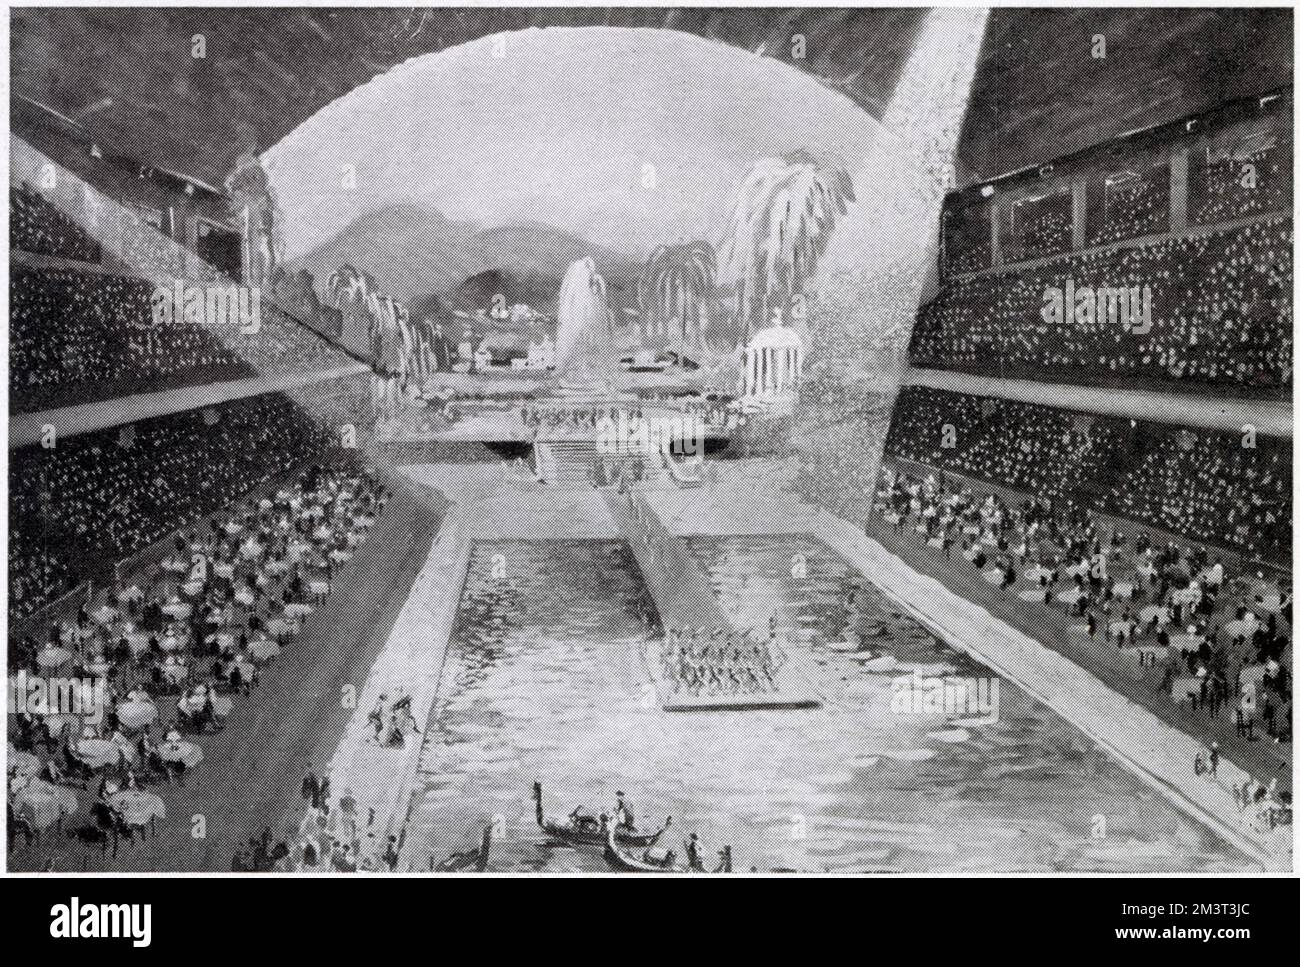 Der künstlerische Eindruck von Earl's Court mit einem lido-Pool, der durch Absenken des Foors möglich wird. Stockfoto